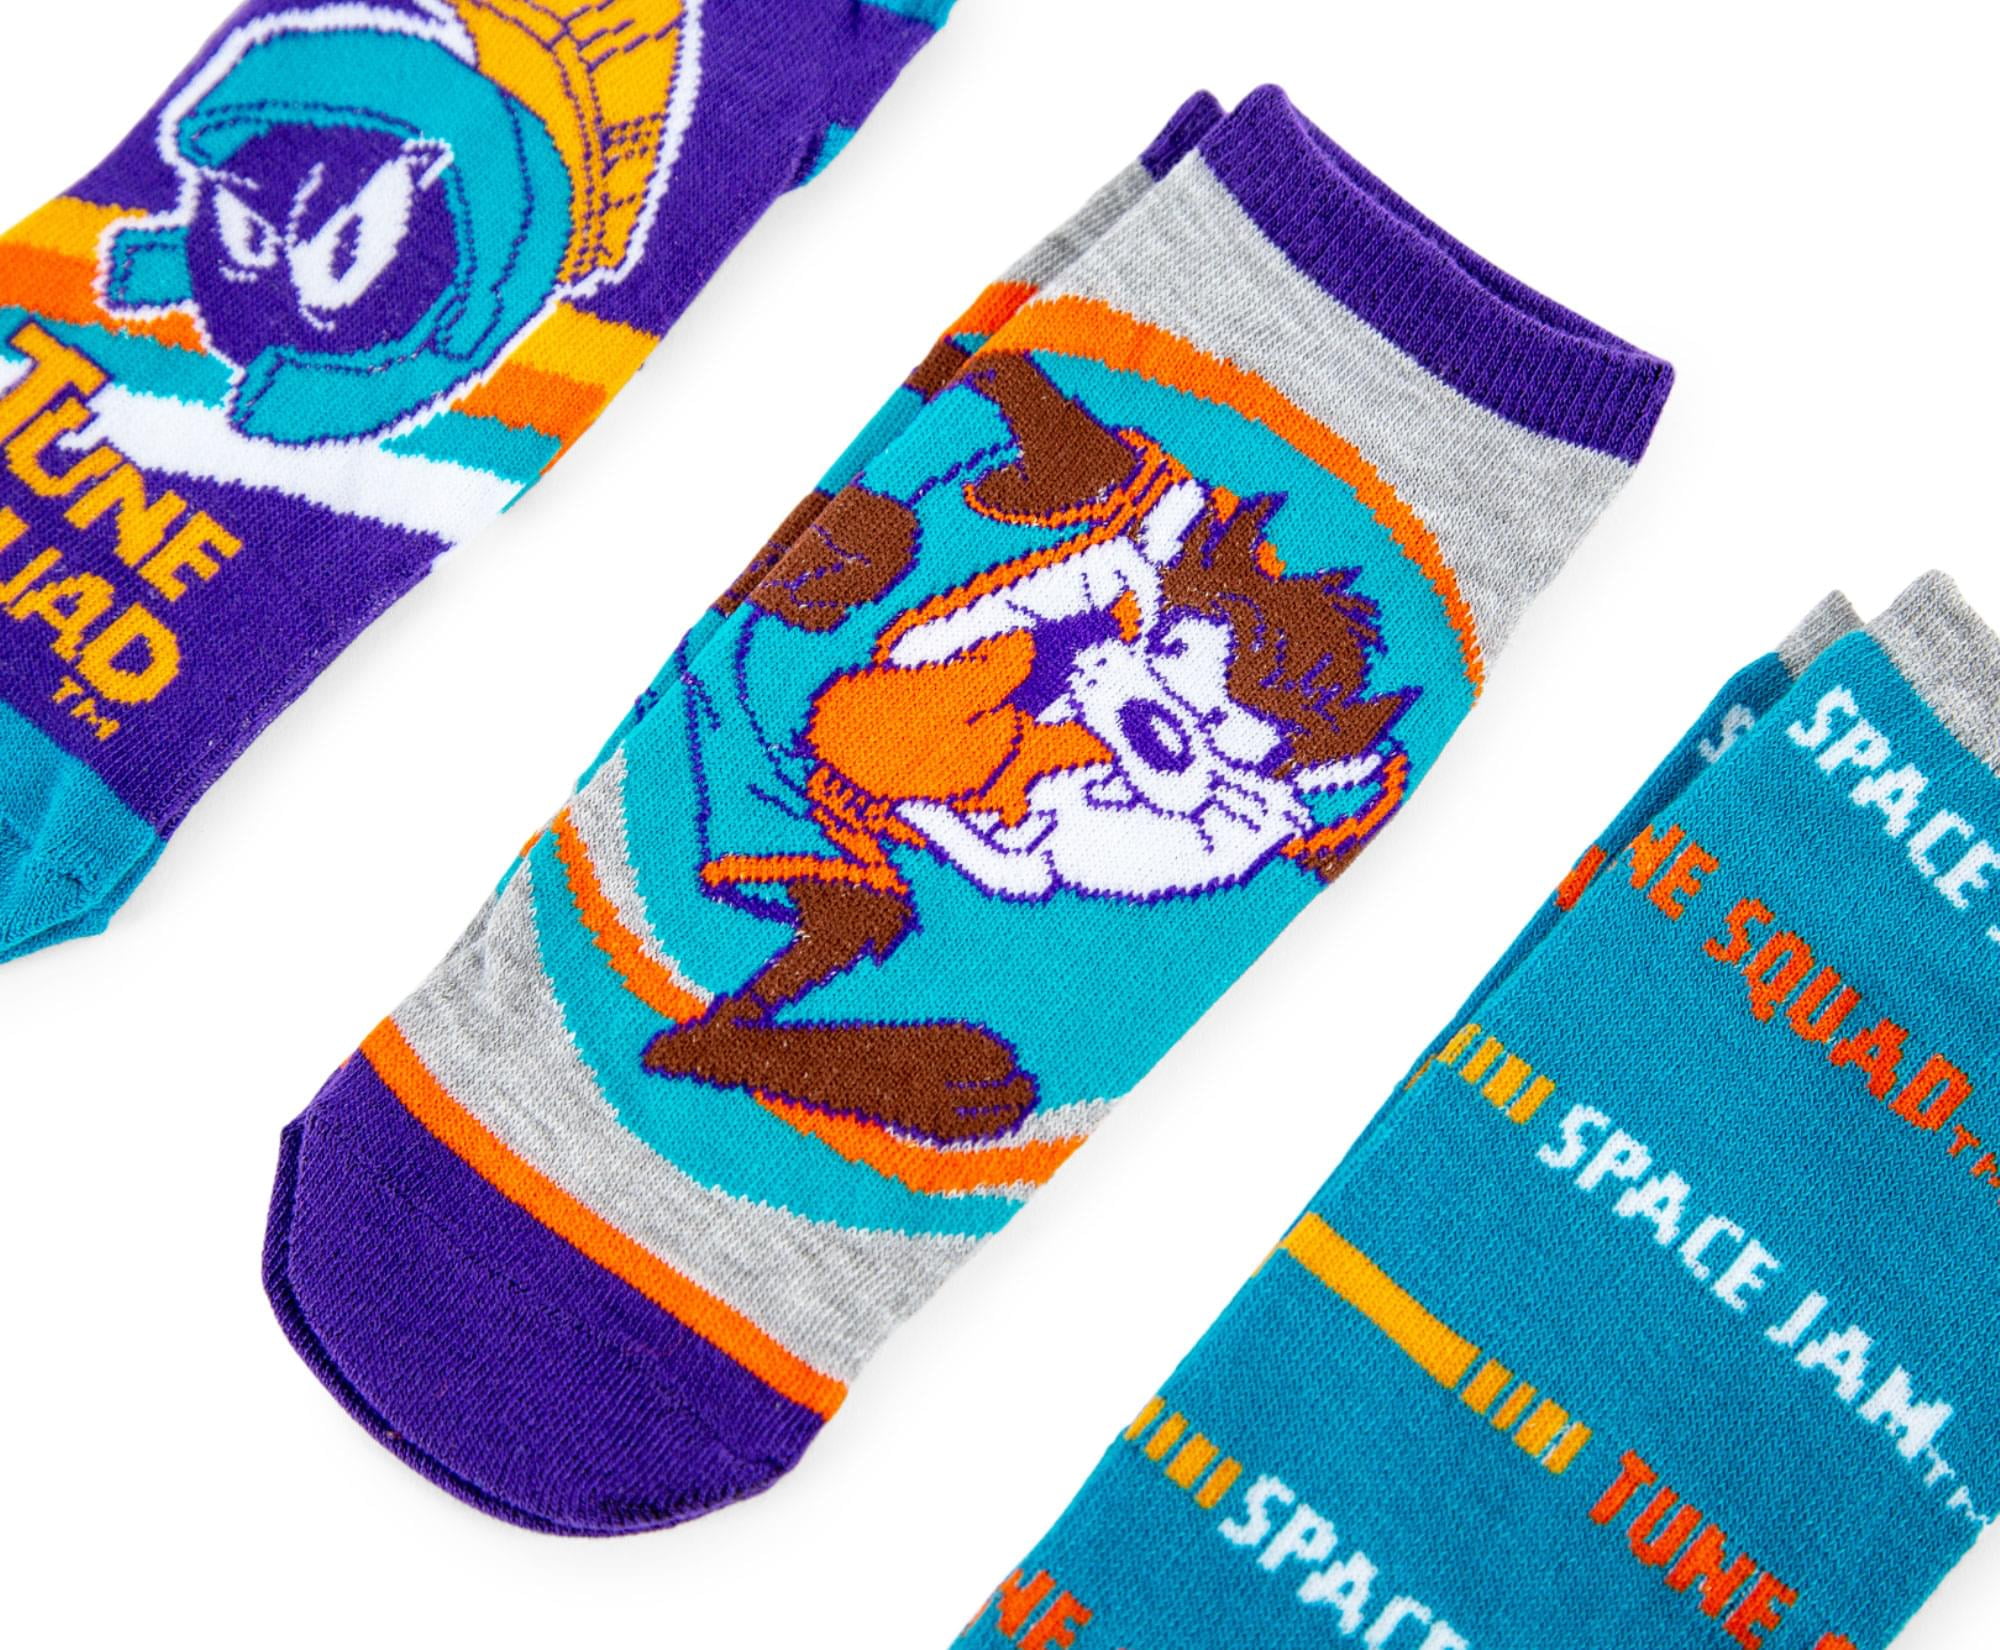 SPACE JAM 11 Socks! - SILKY SOCKS